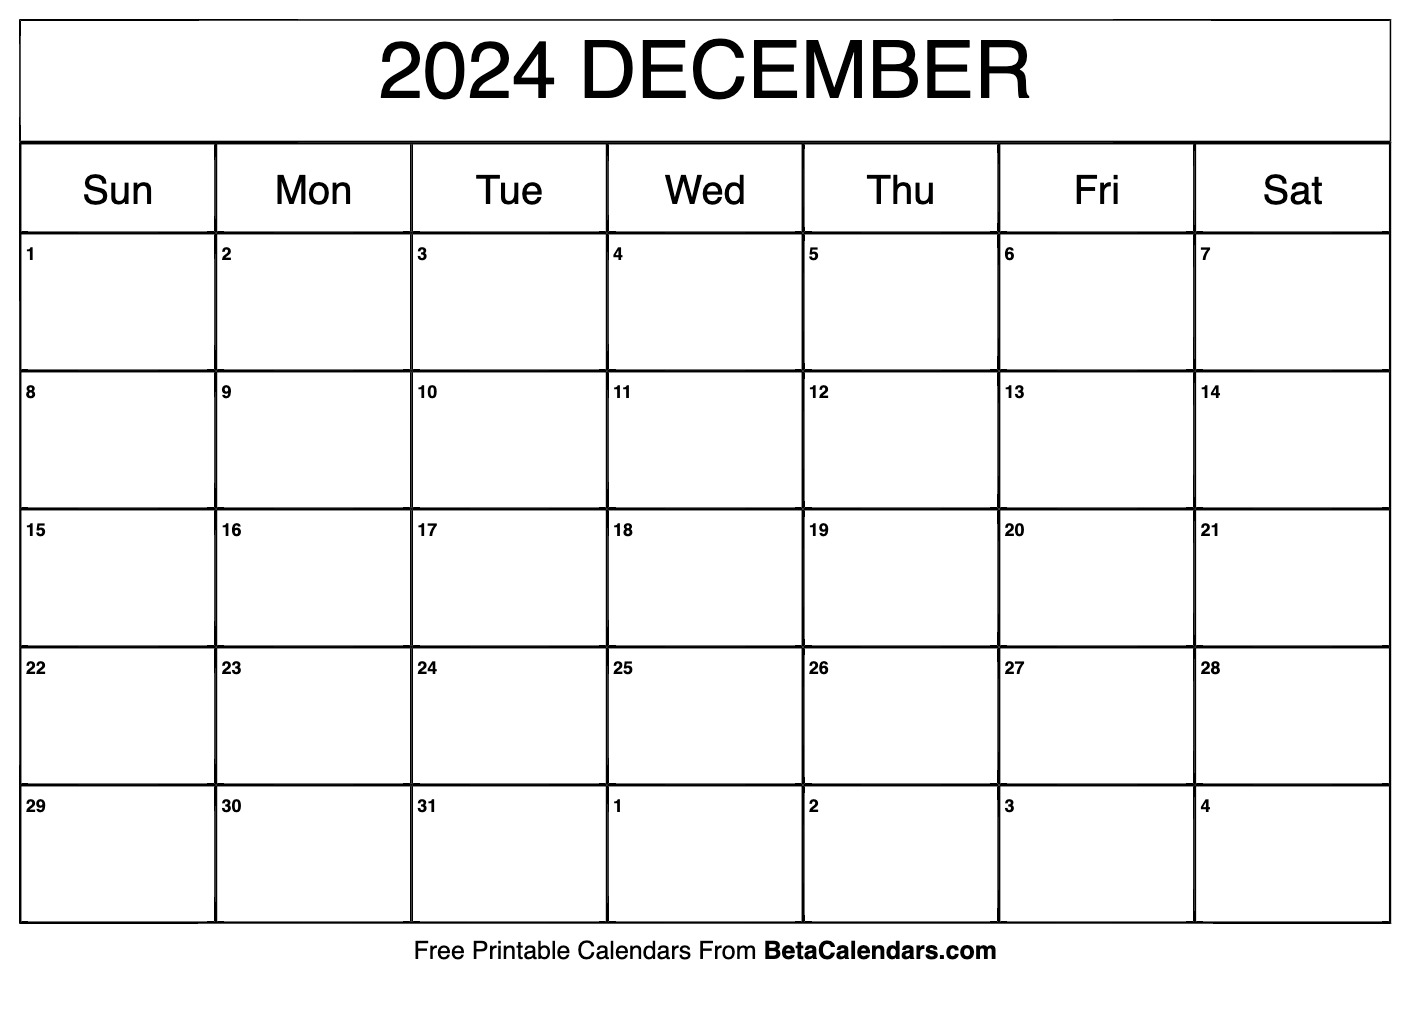 Free Printable Calendar For December 2024 Babs Marian